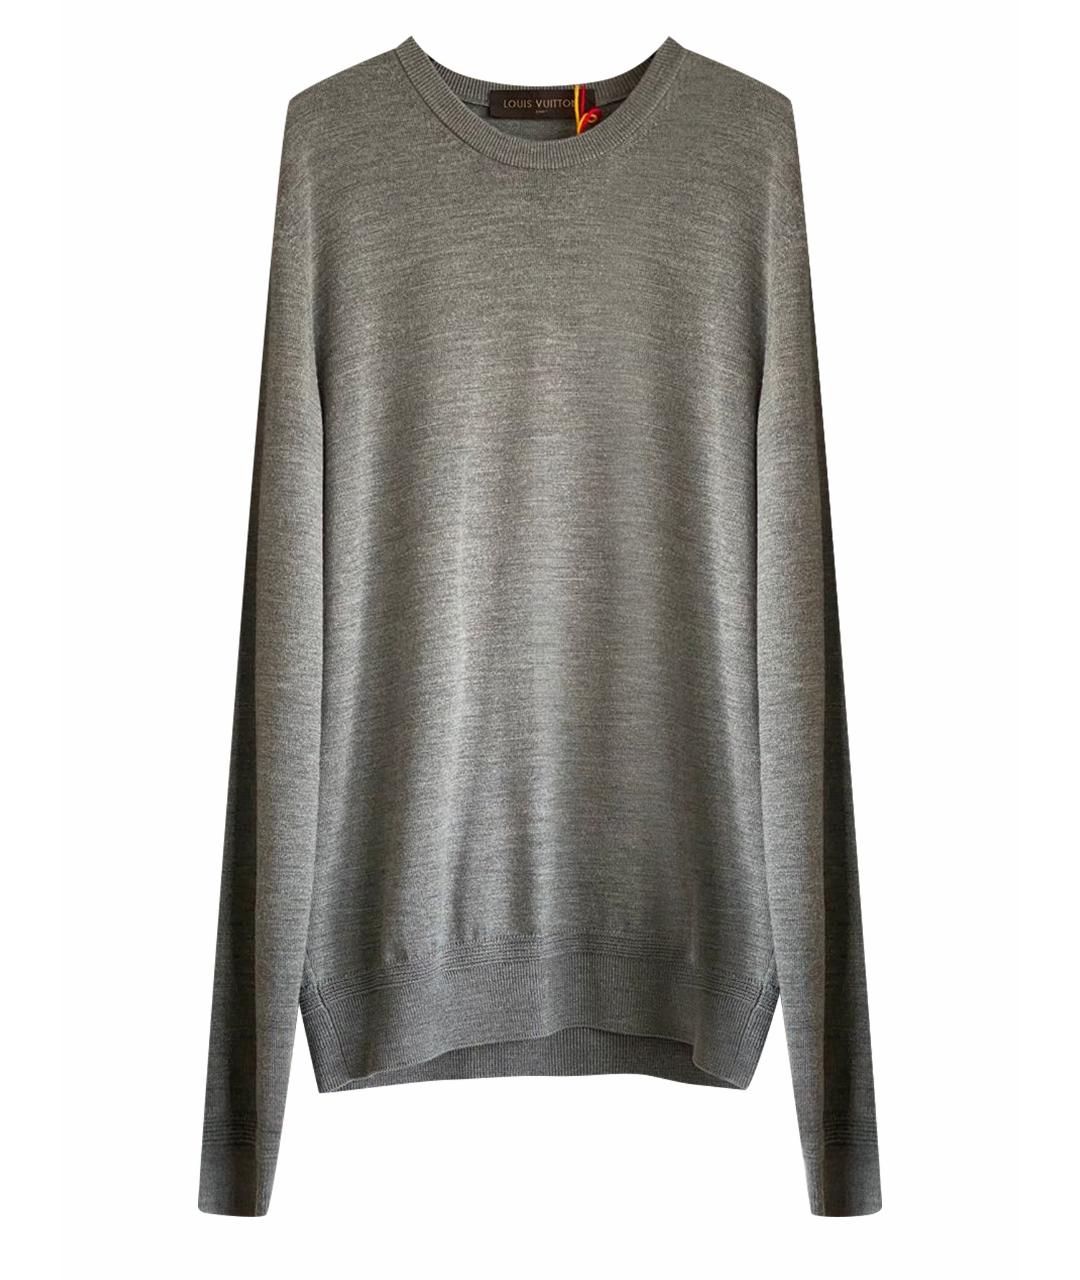 LOUIS VUITTON PRE-OWNED Серый шерстяной джемпер / свитер, фото 1